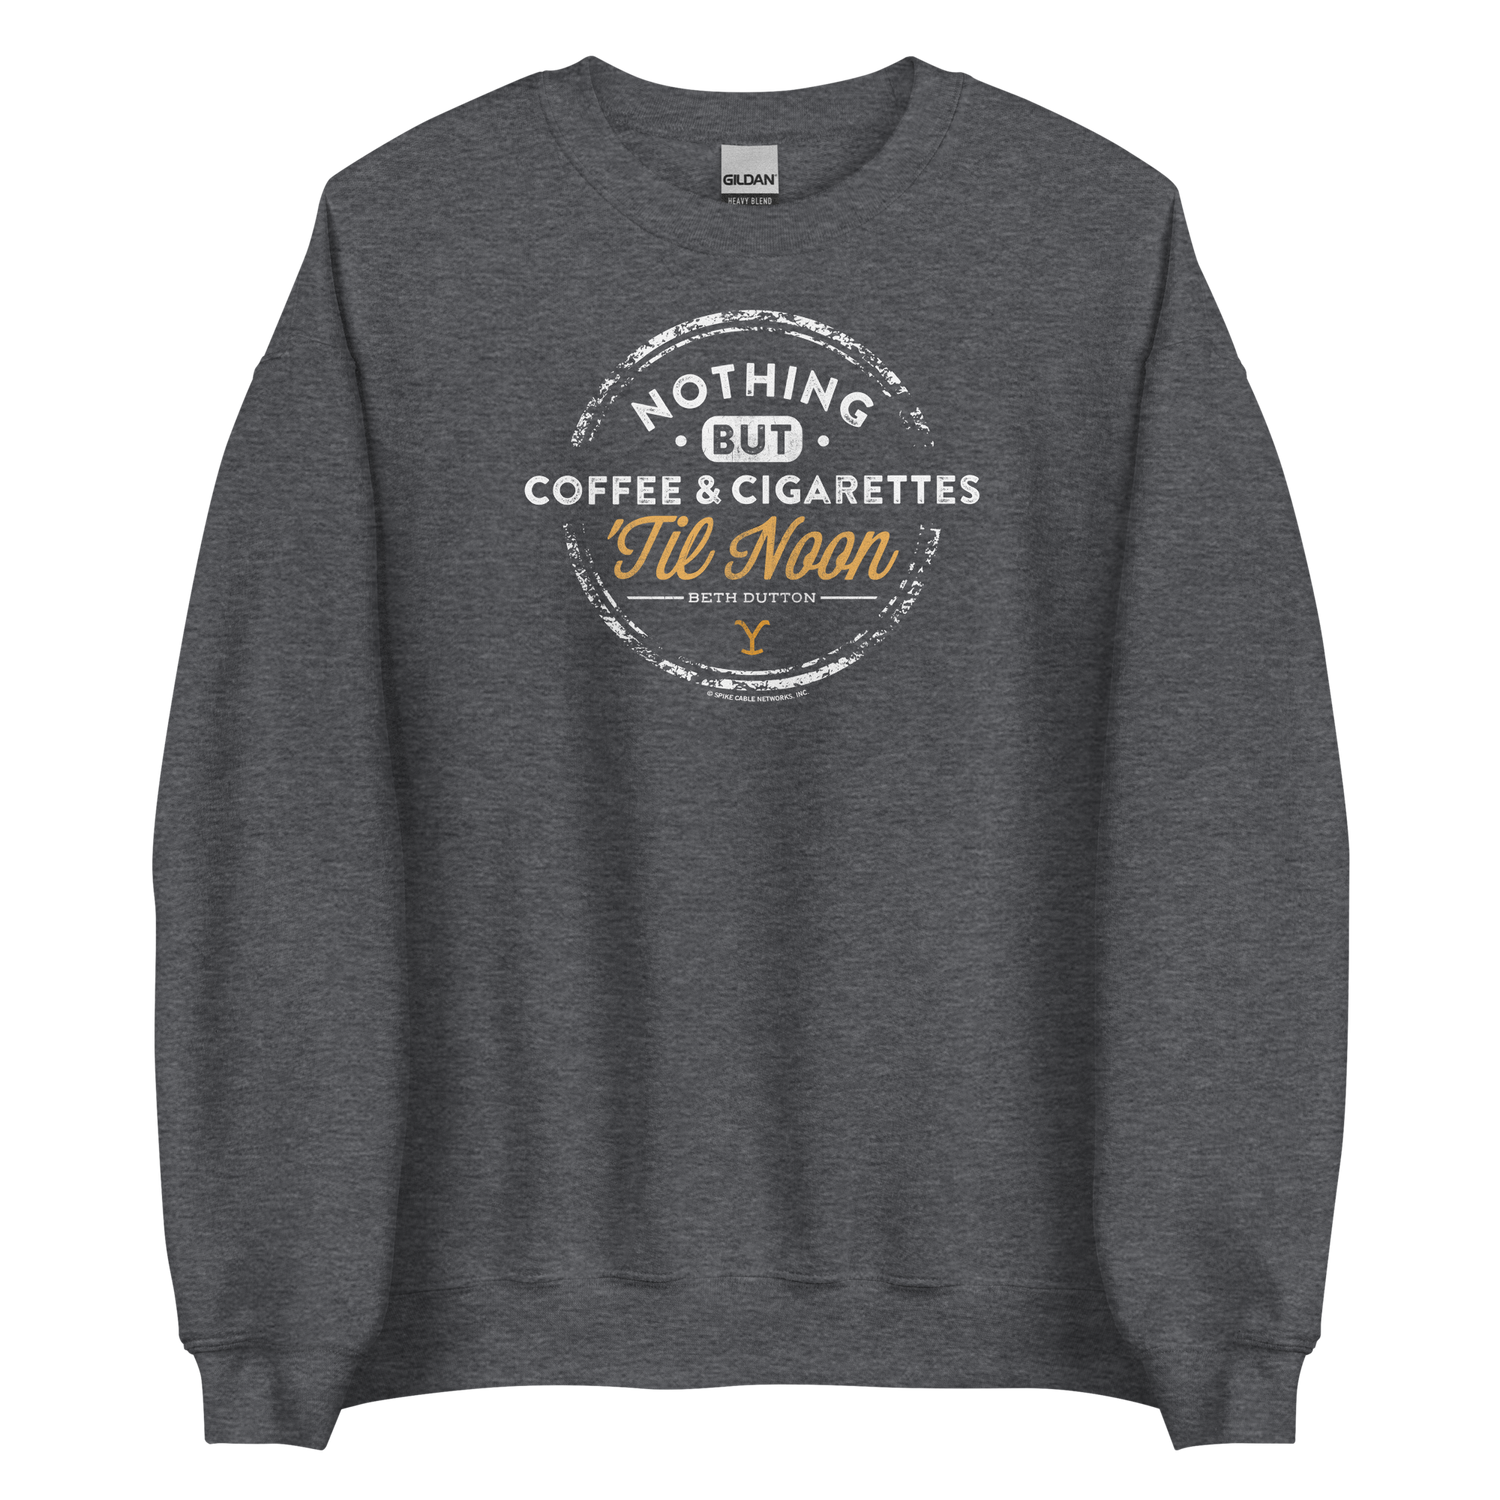 Yellowstone Nothing But Coffee & Cigarettes 'Til Noon Fleece Crewneck Sweatshirt